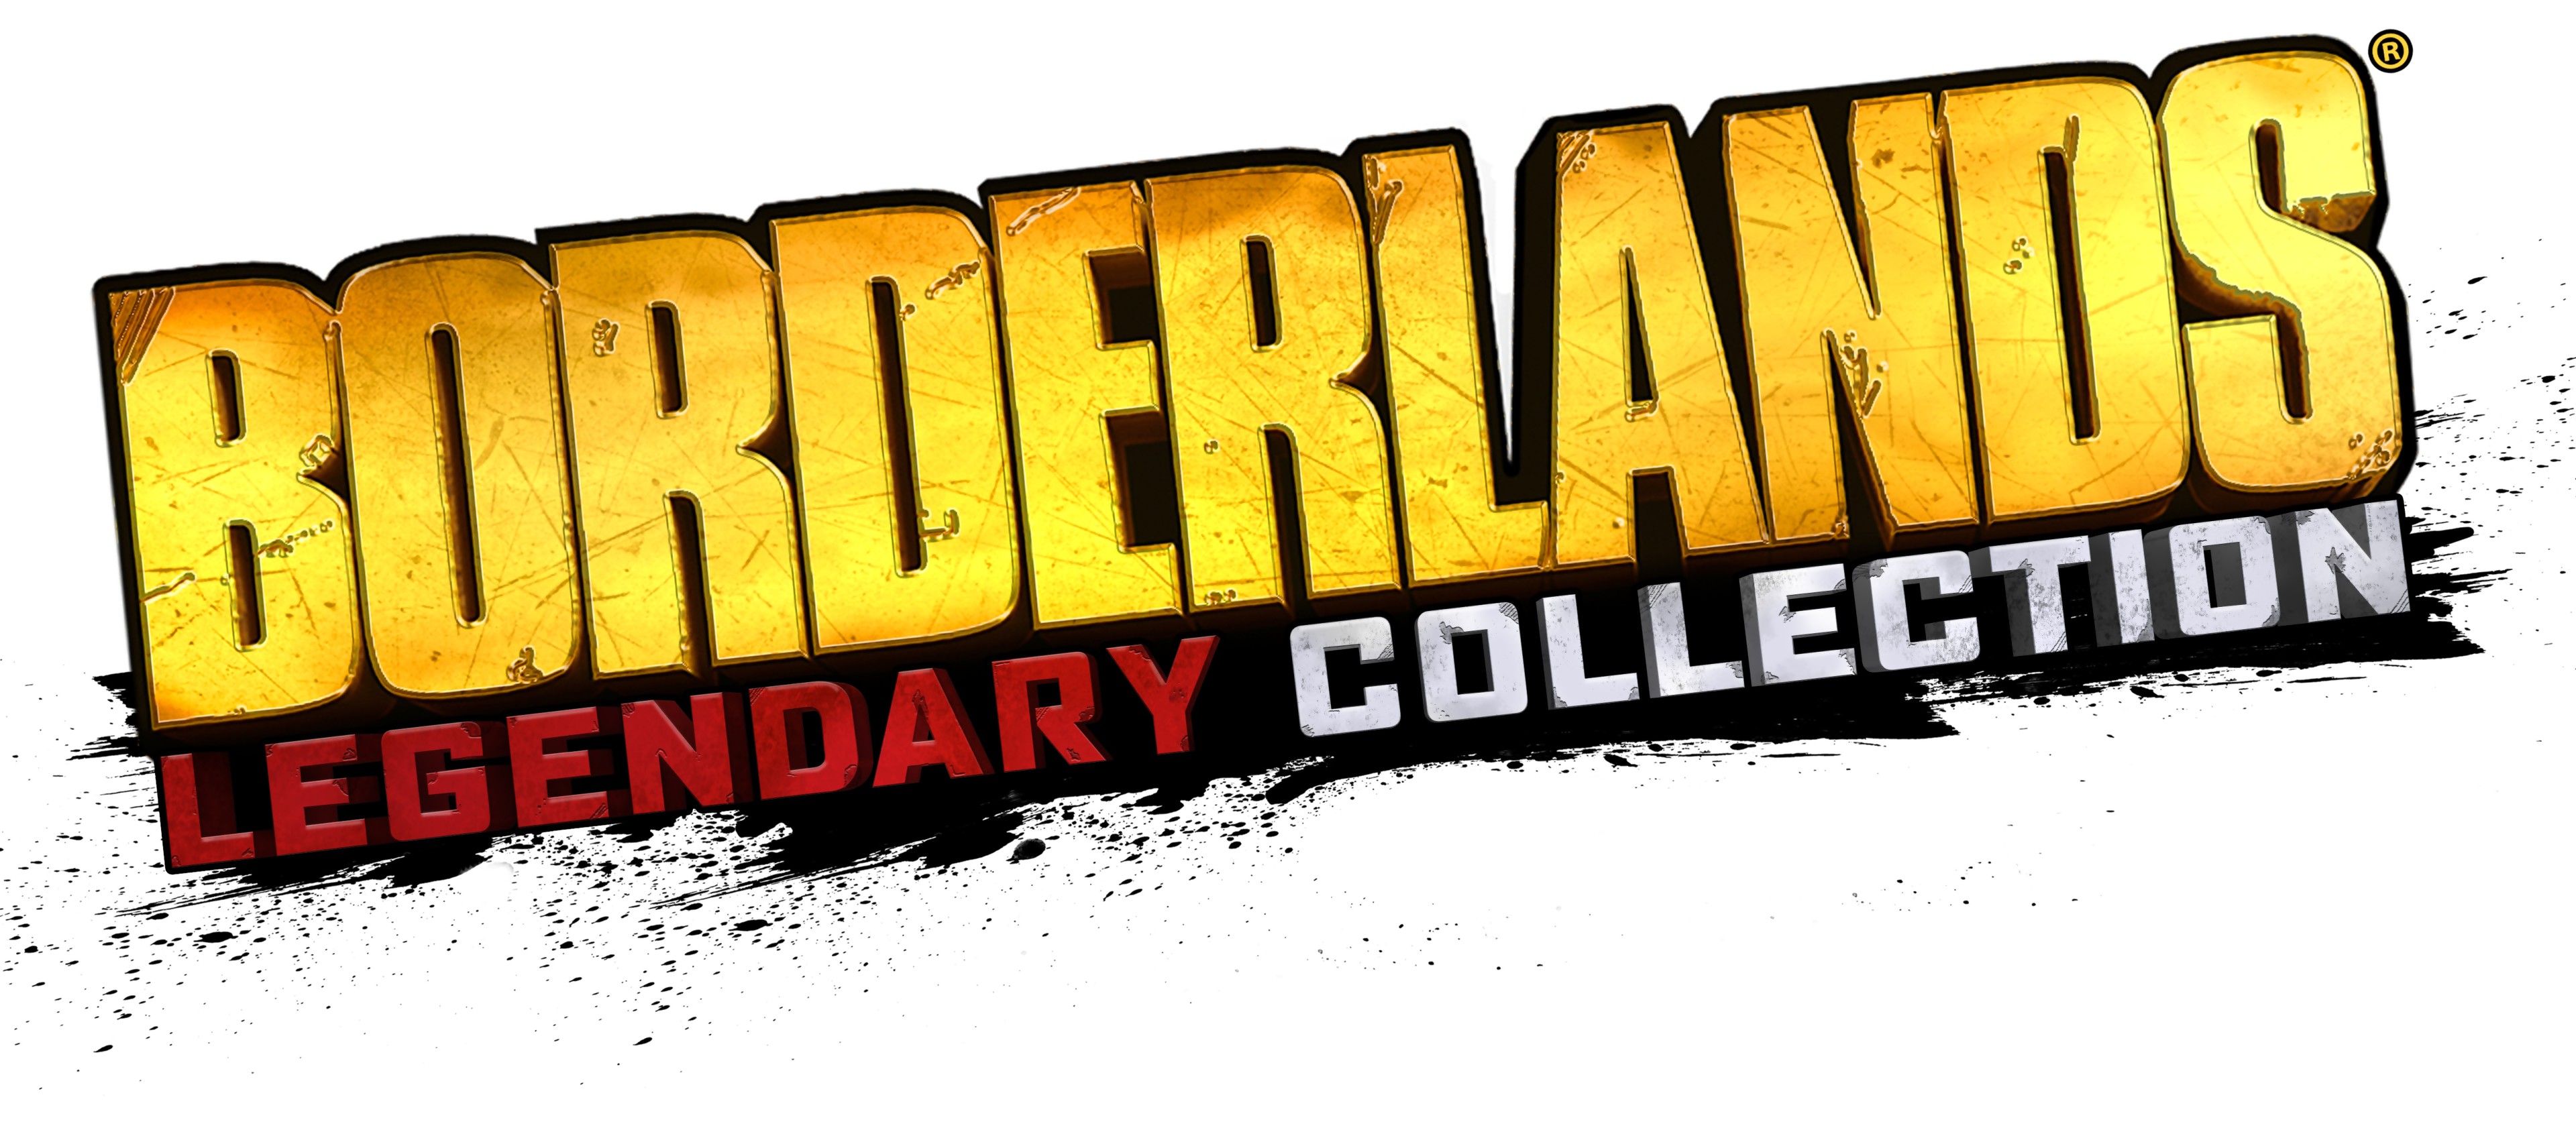 Borderlands nintendo. Borderlands логотип. Бордерлендс легендари коллекшн. Borderlands Legendary collection Xbox. Бордерлендс на Нинтендо свитч.